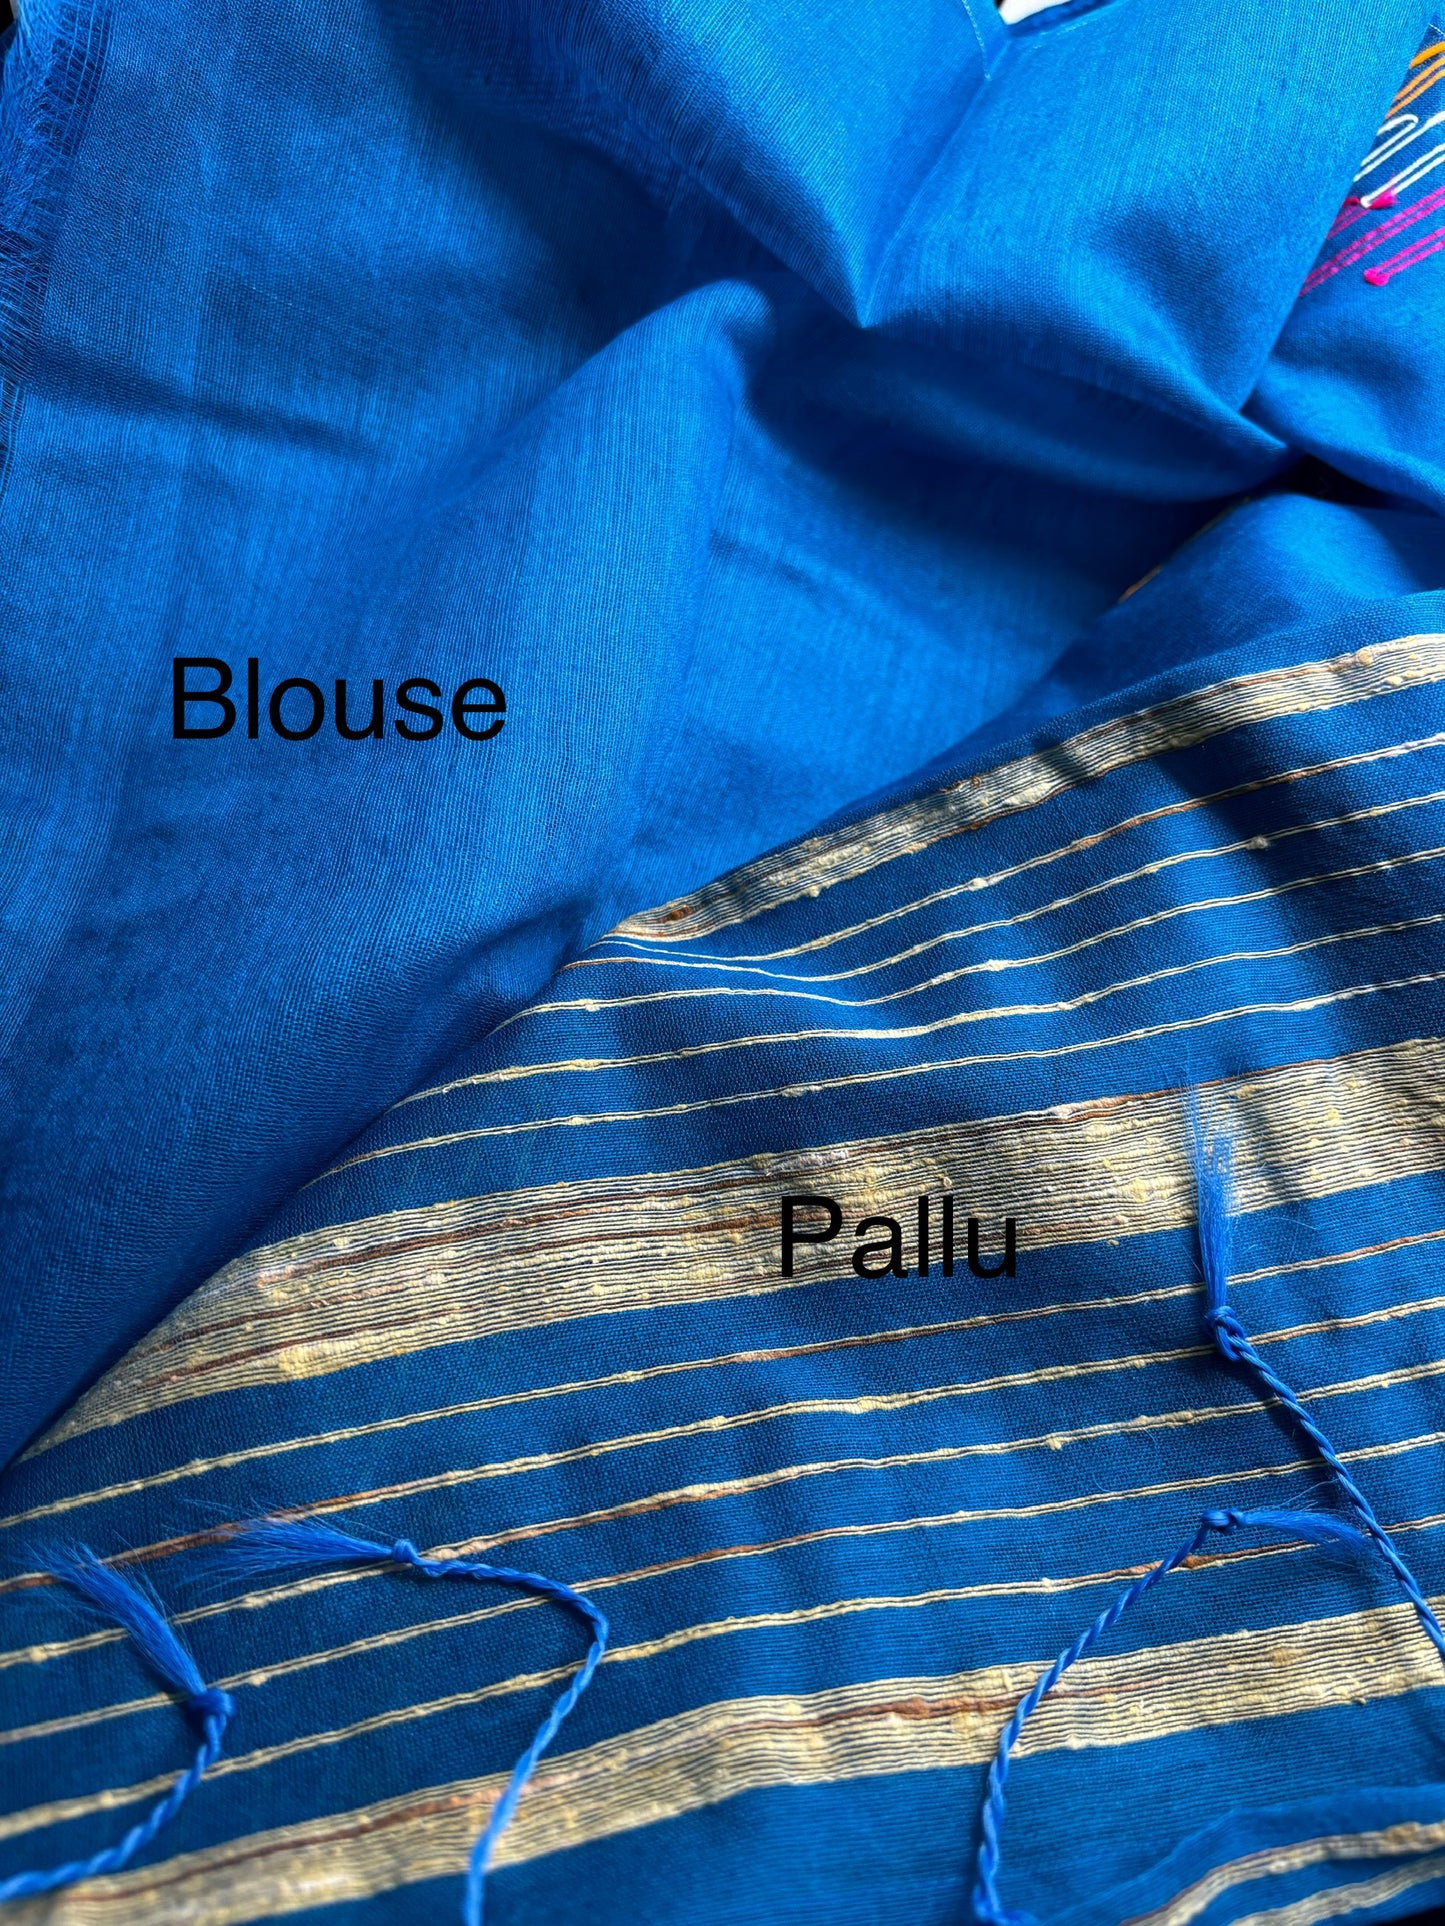 Bengal Linen